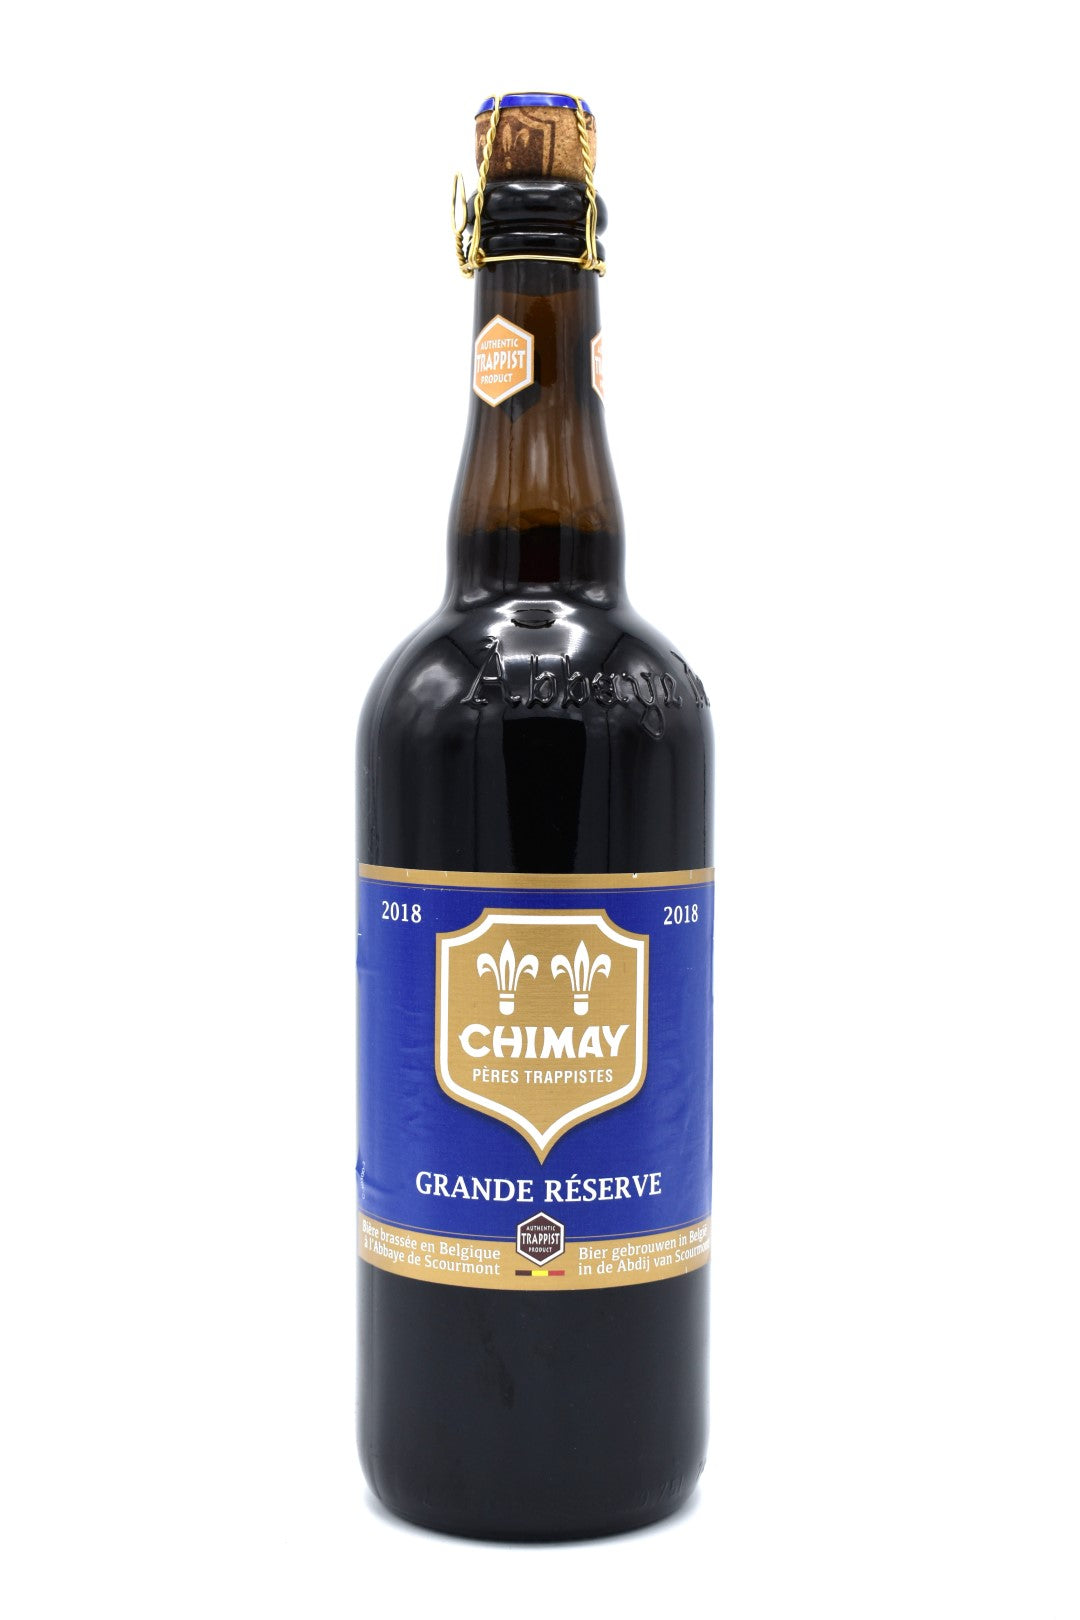 Chimay Grande Reserve Bleue 0,75l und 0,33l - das beliebteste Ale von Chimay mit mit 9% Vol.